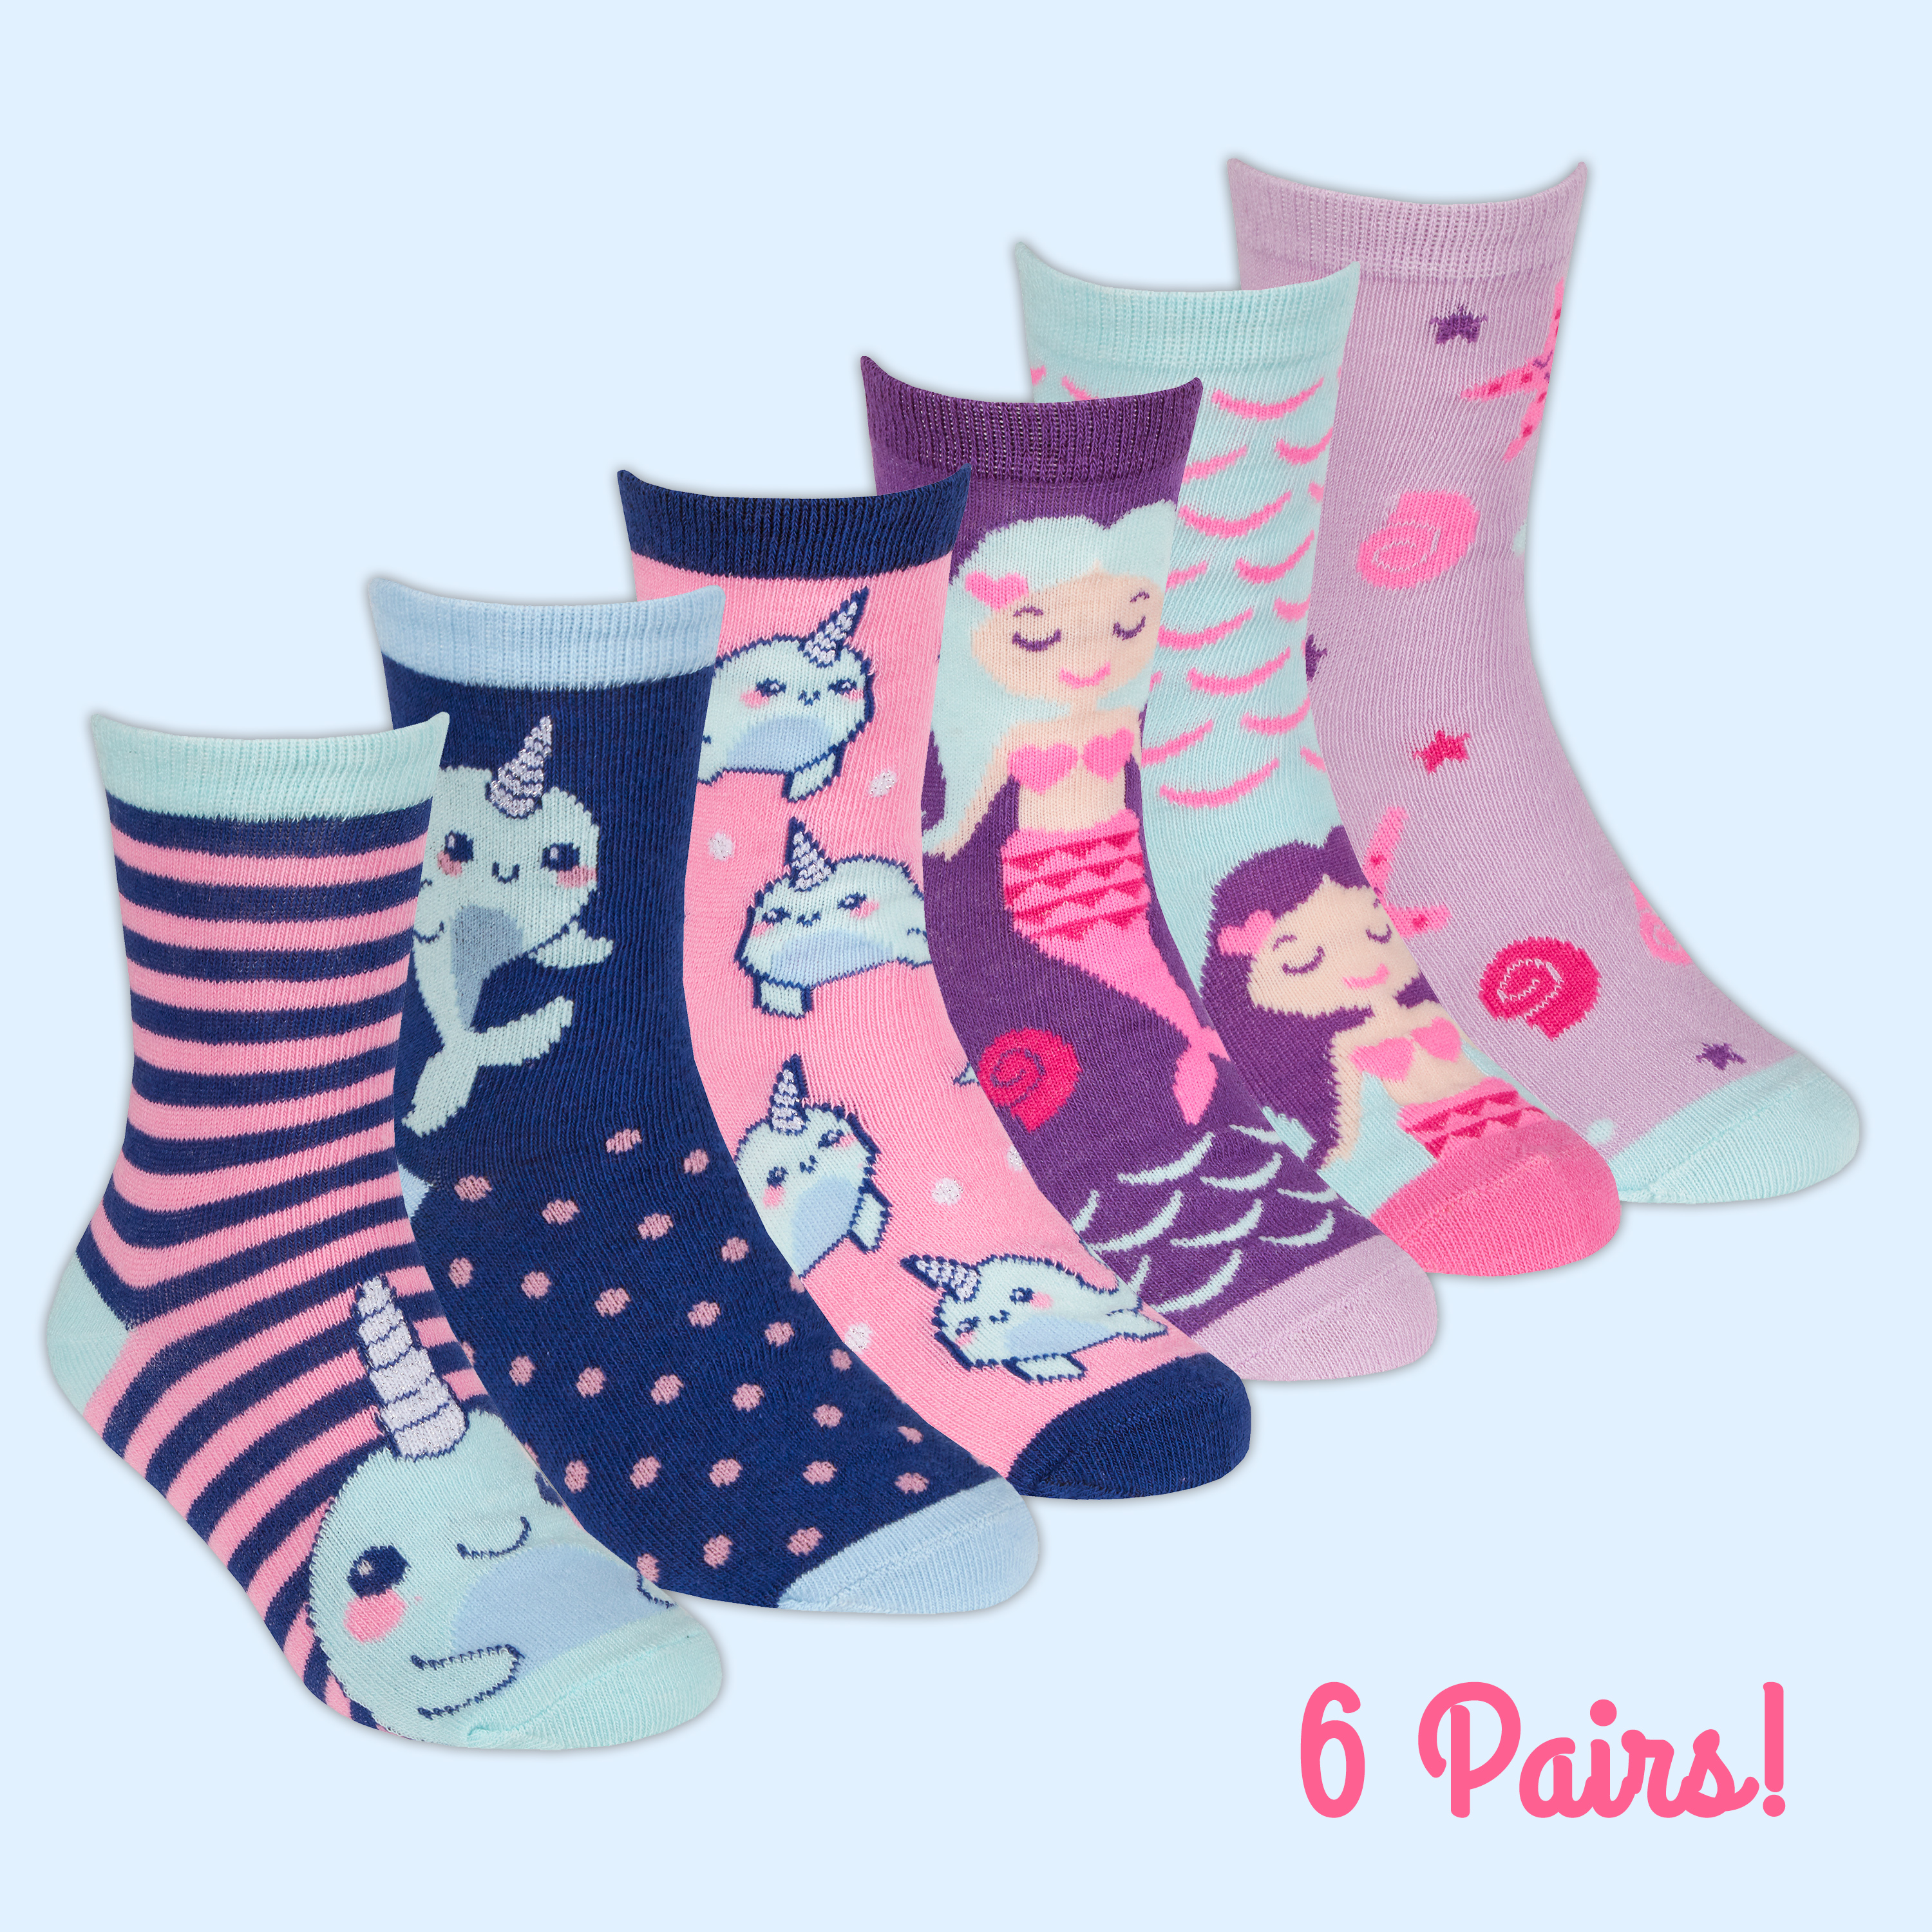 6 Pair Multipack Pastel Novelty Girls Unicorn Socks Birthday Christmas Gift SOCK SNOB